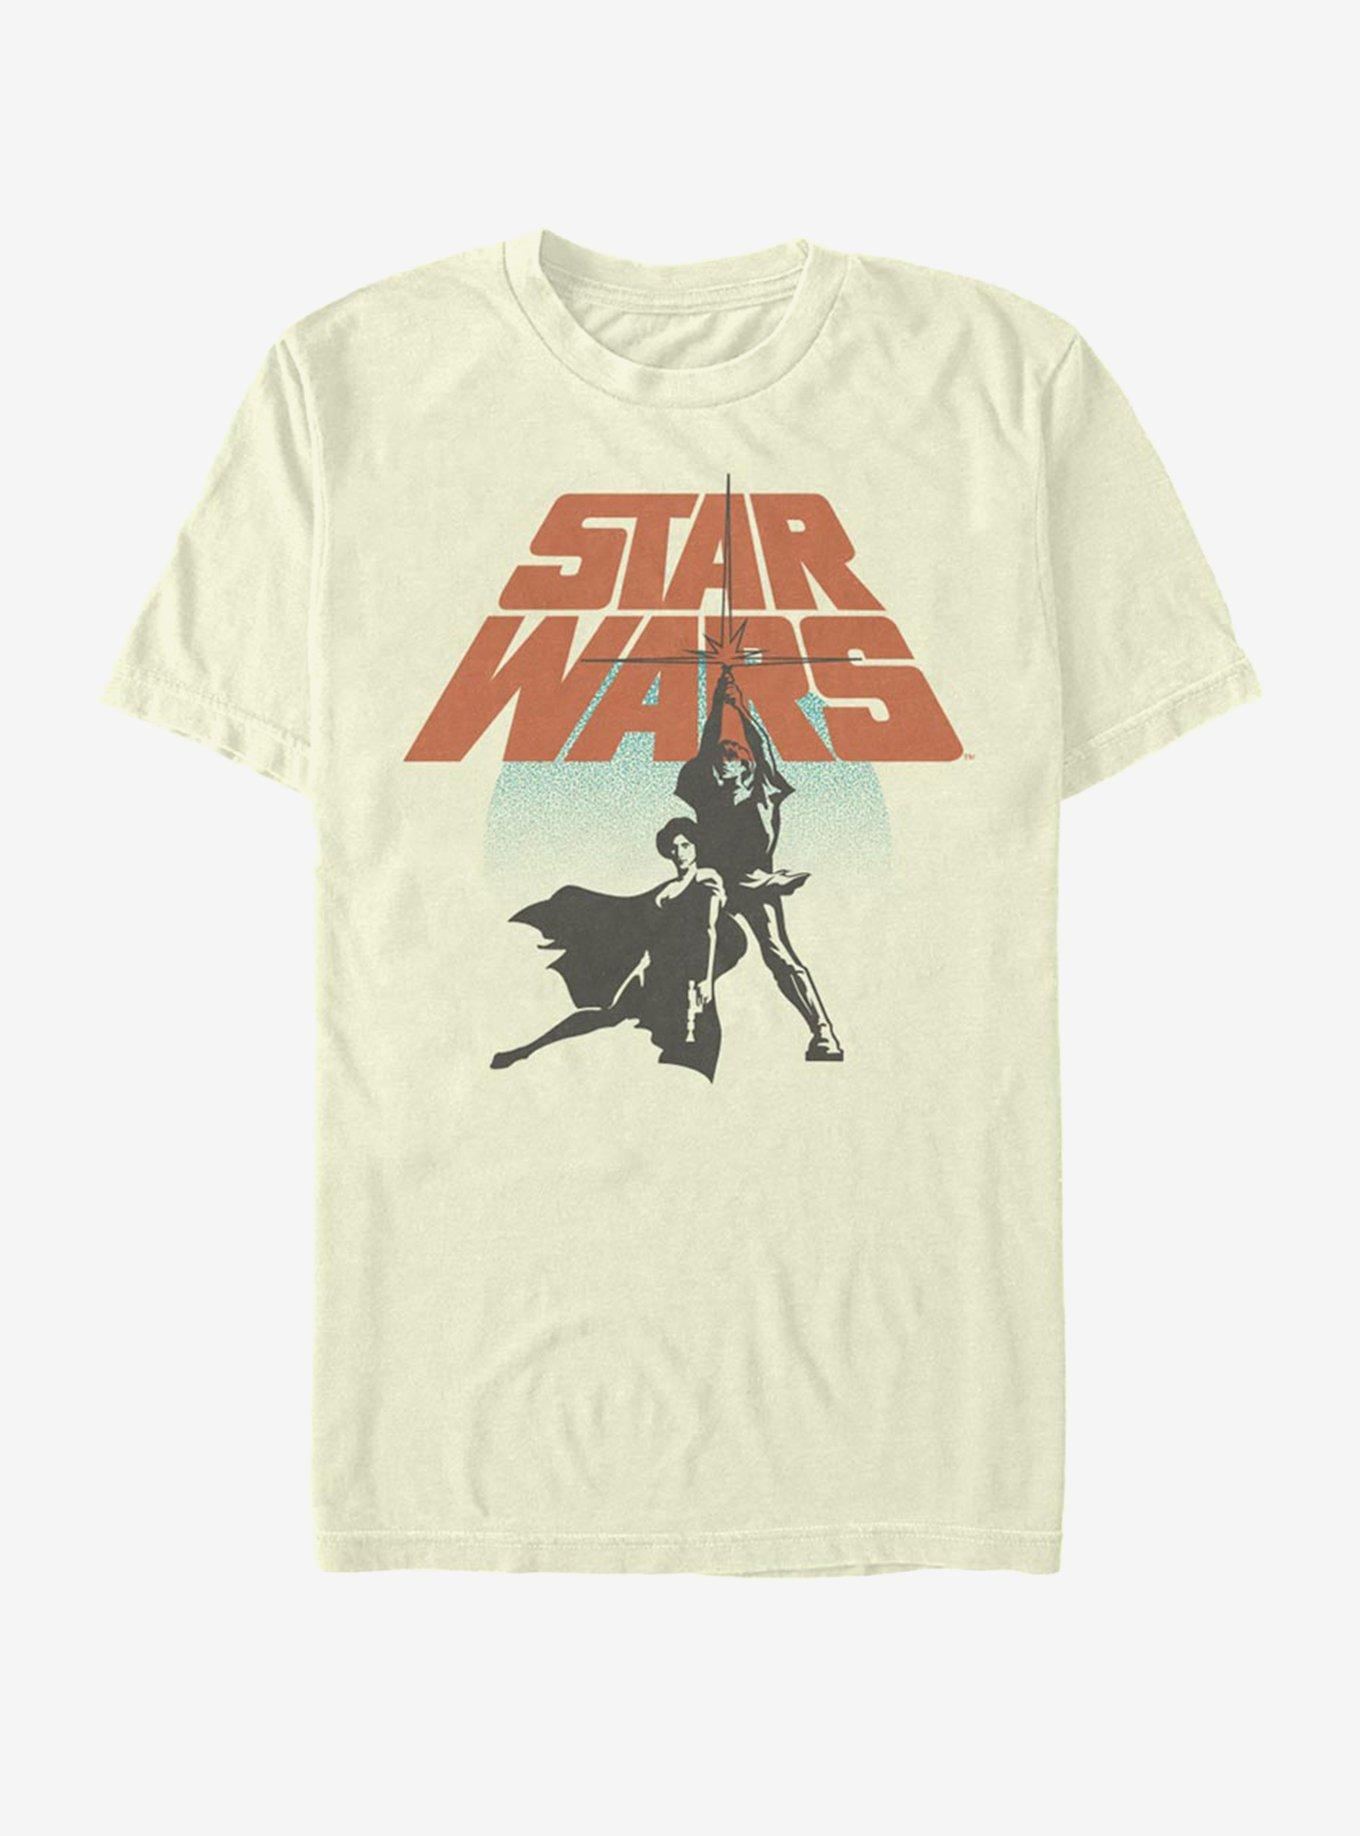 Star Wars Star Wars Circle T-Shirt, NATURAL, hi-res